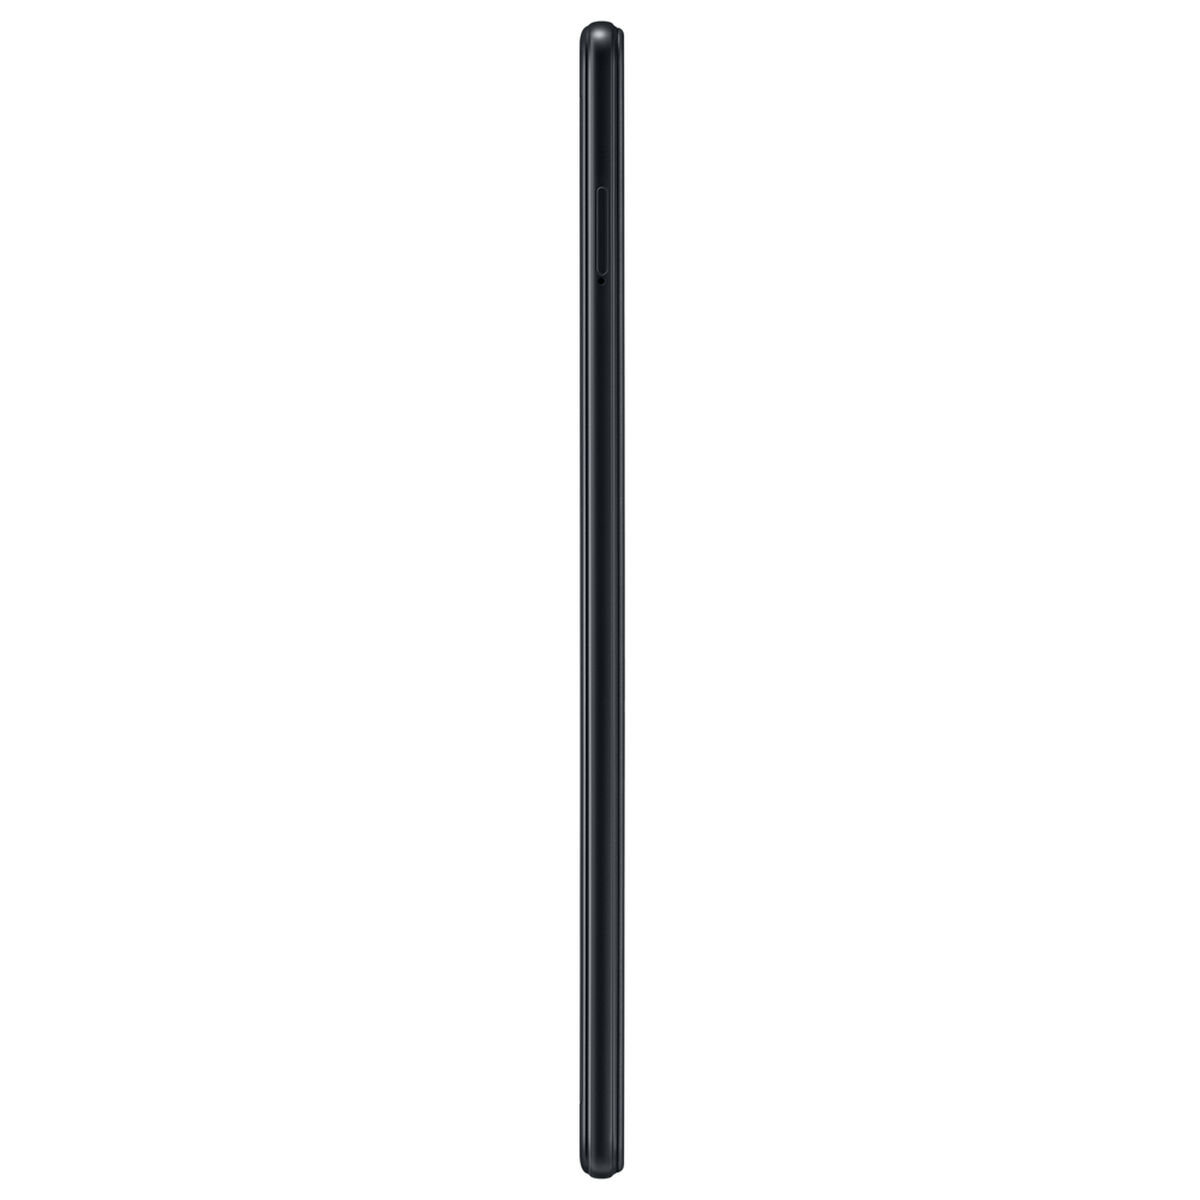 Tablet Samsung T290 Quad Core 2GB 32GB 8” Negra